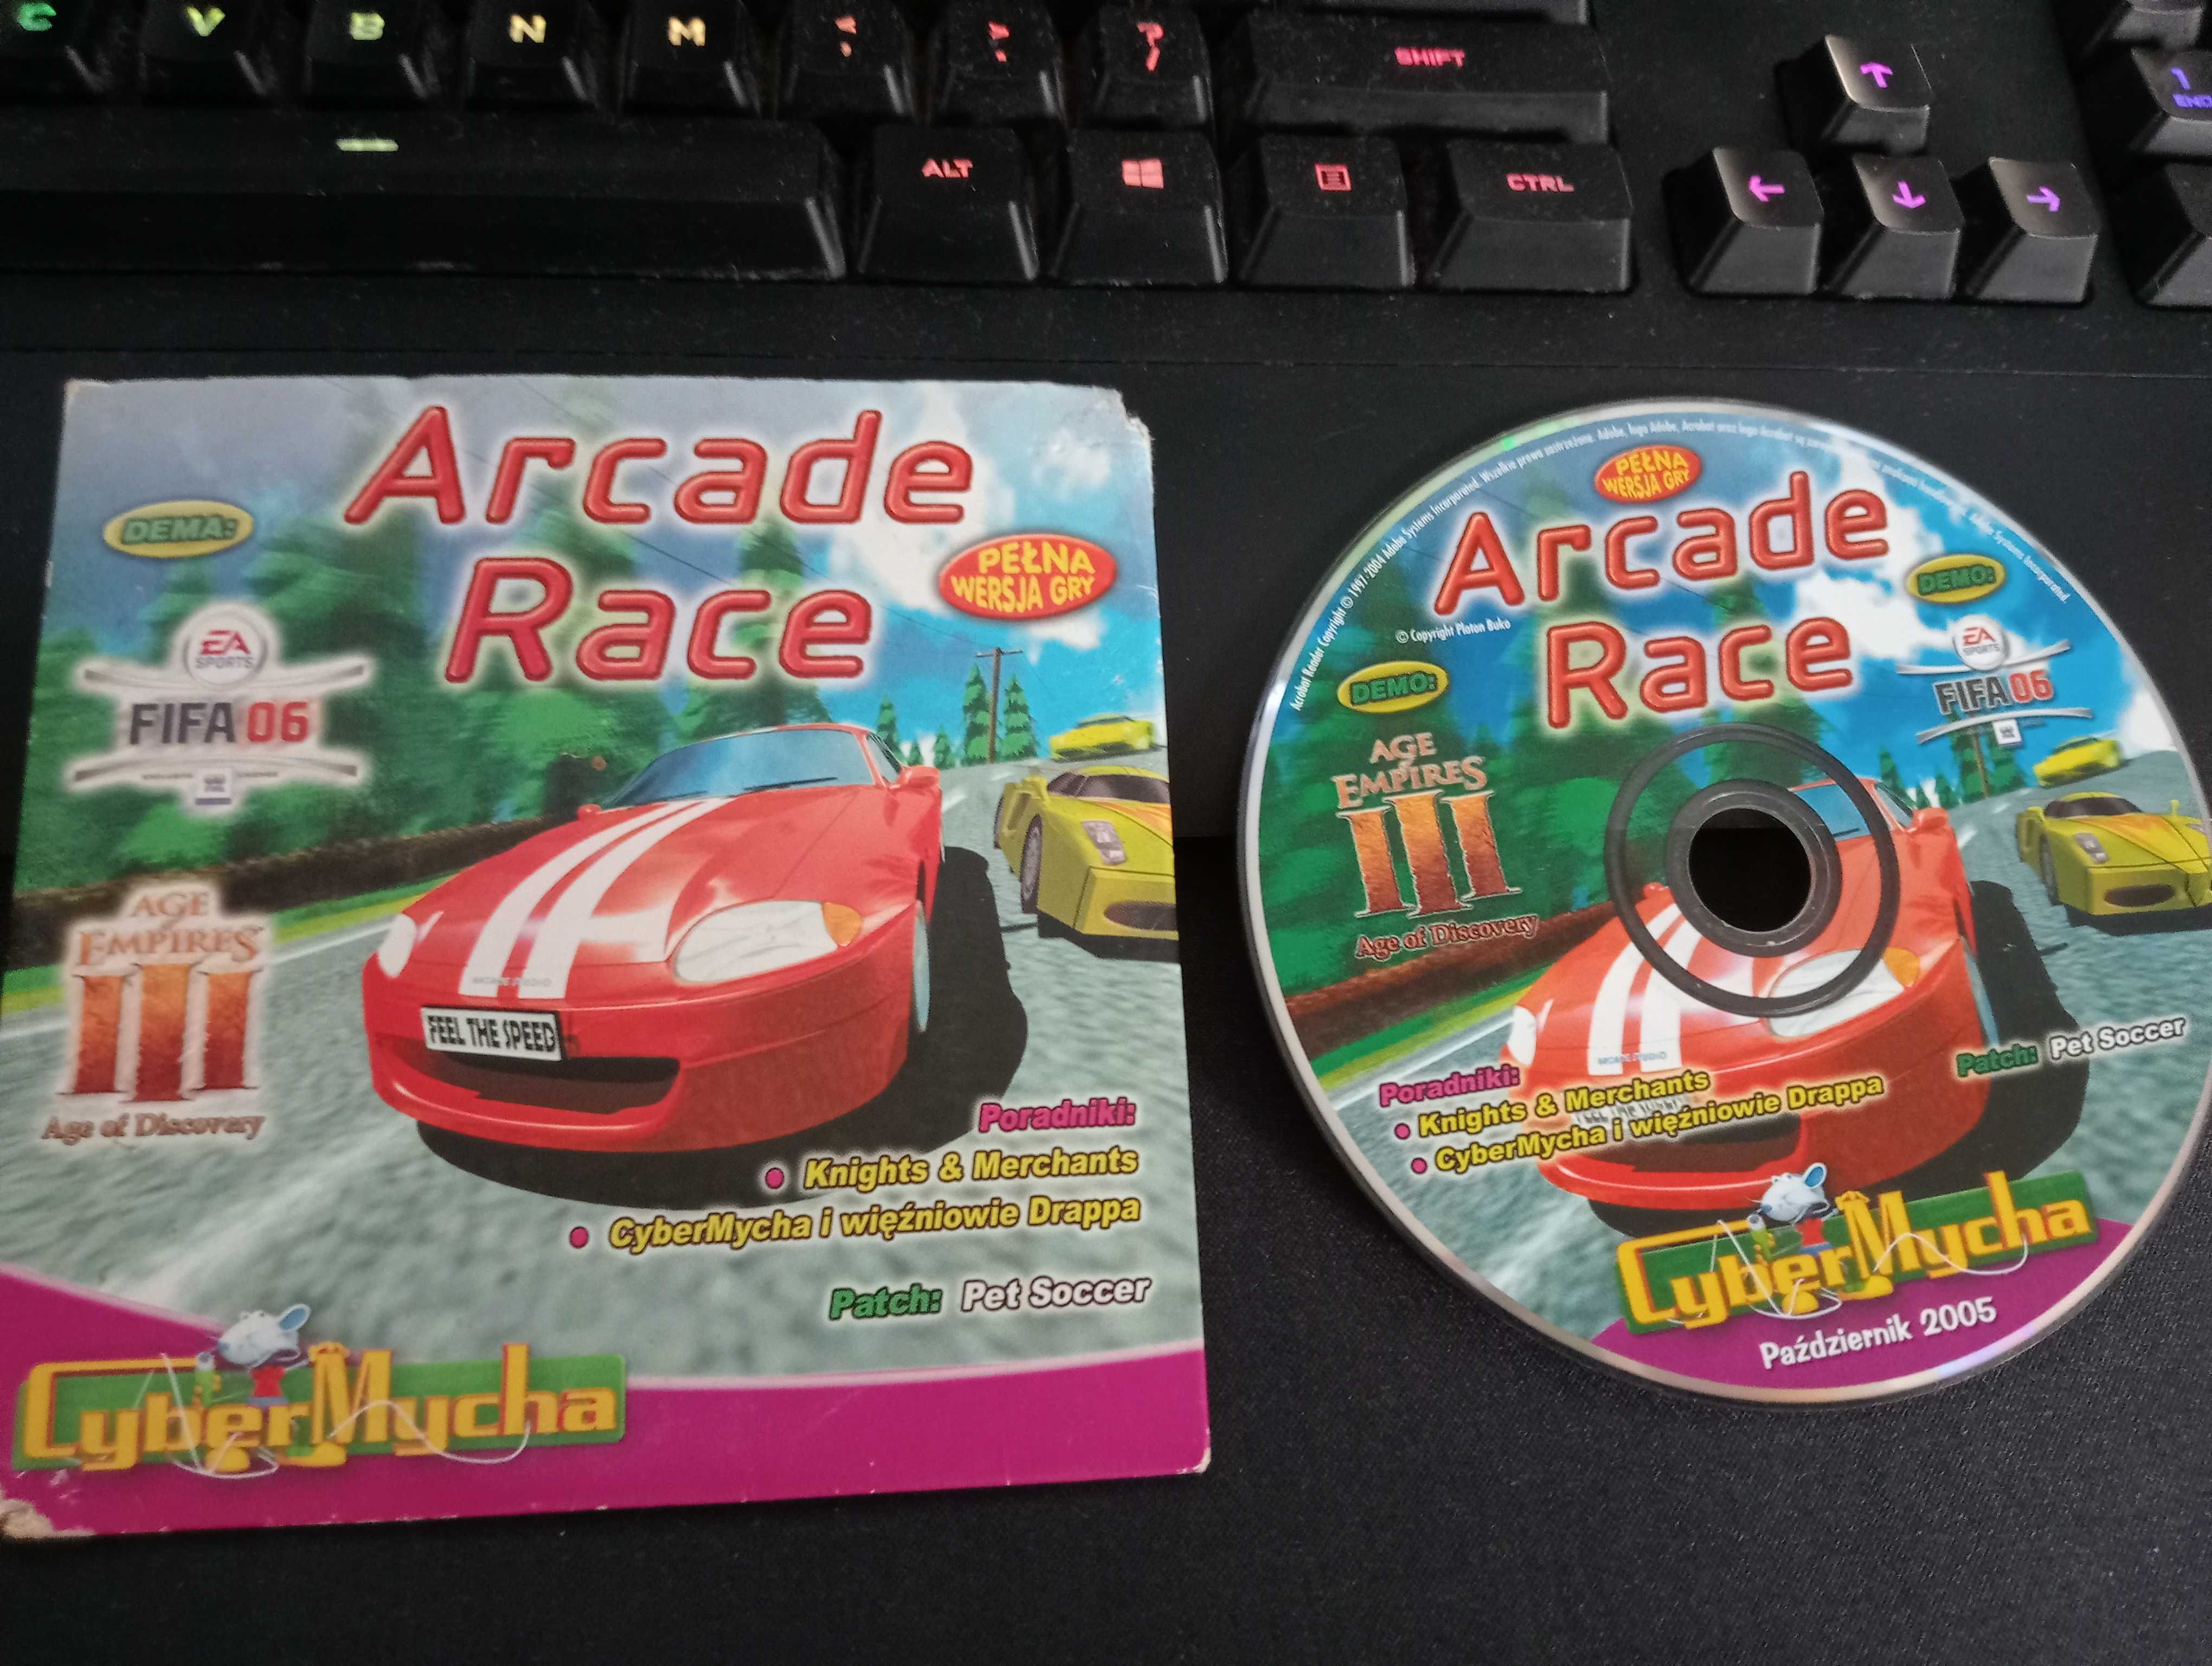 Arcade Race PC wyścigi